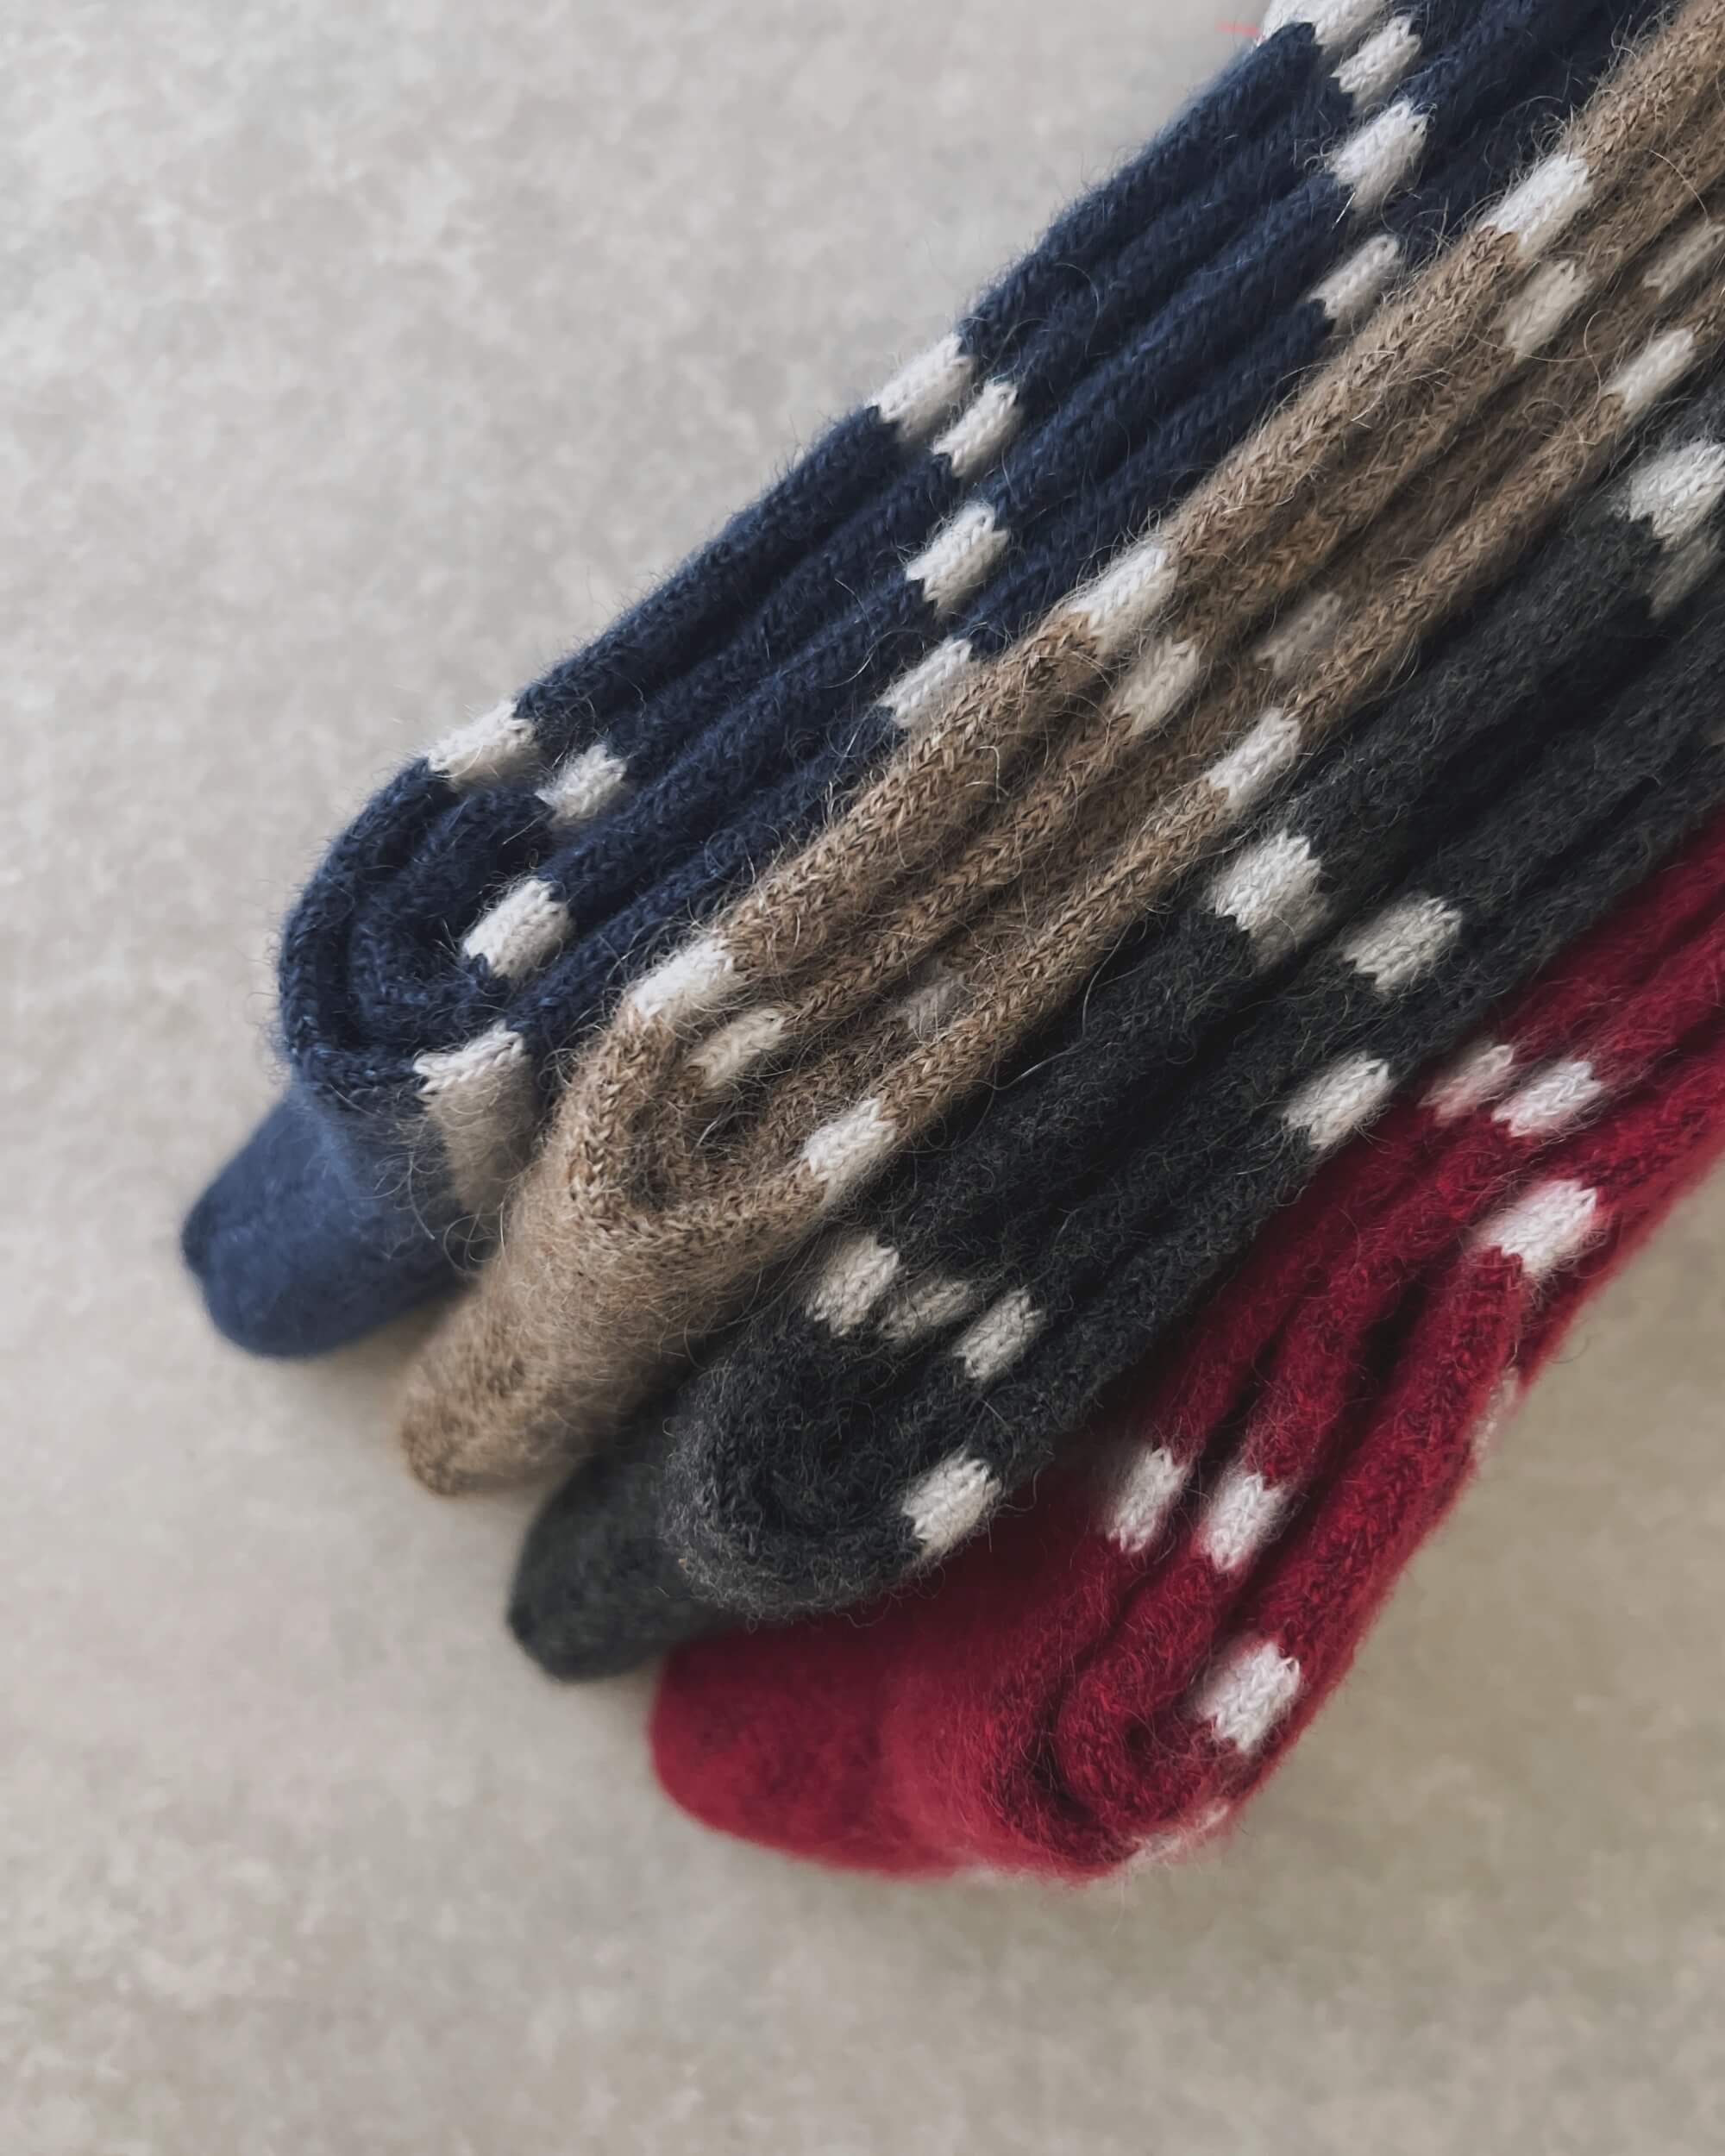 nishiguchi kutsushita : oslo mohair wool border socks